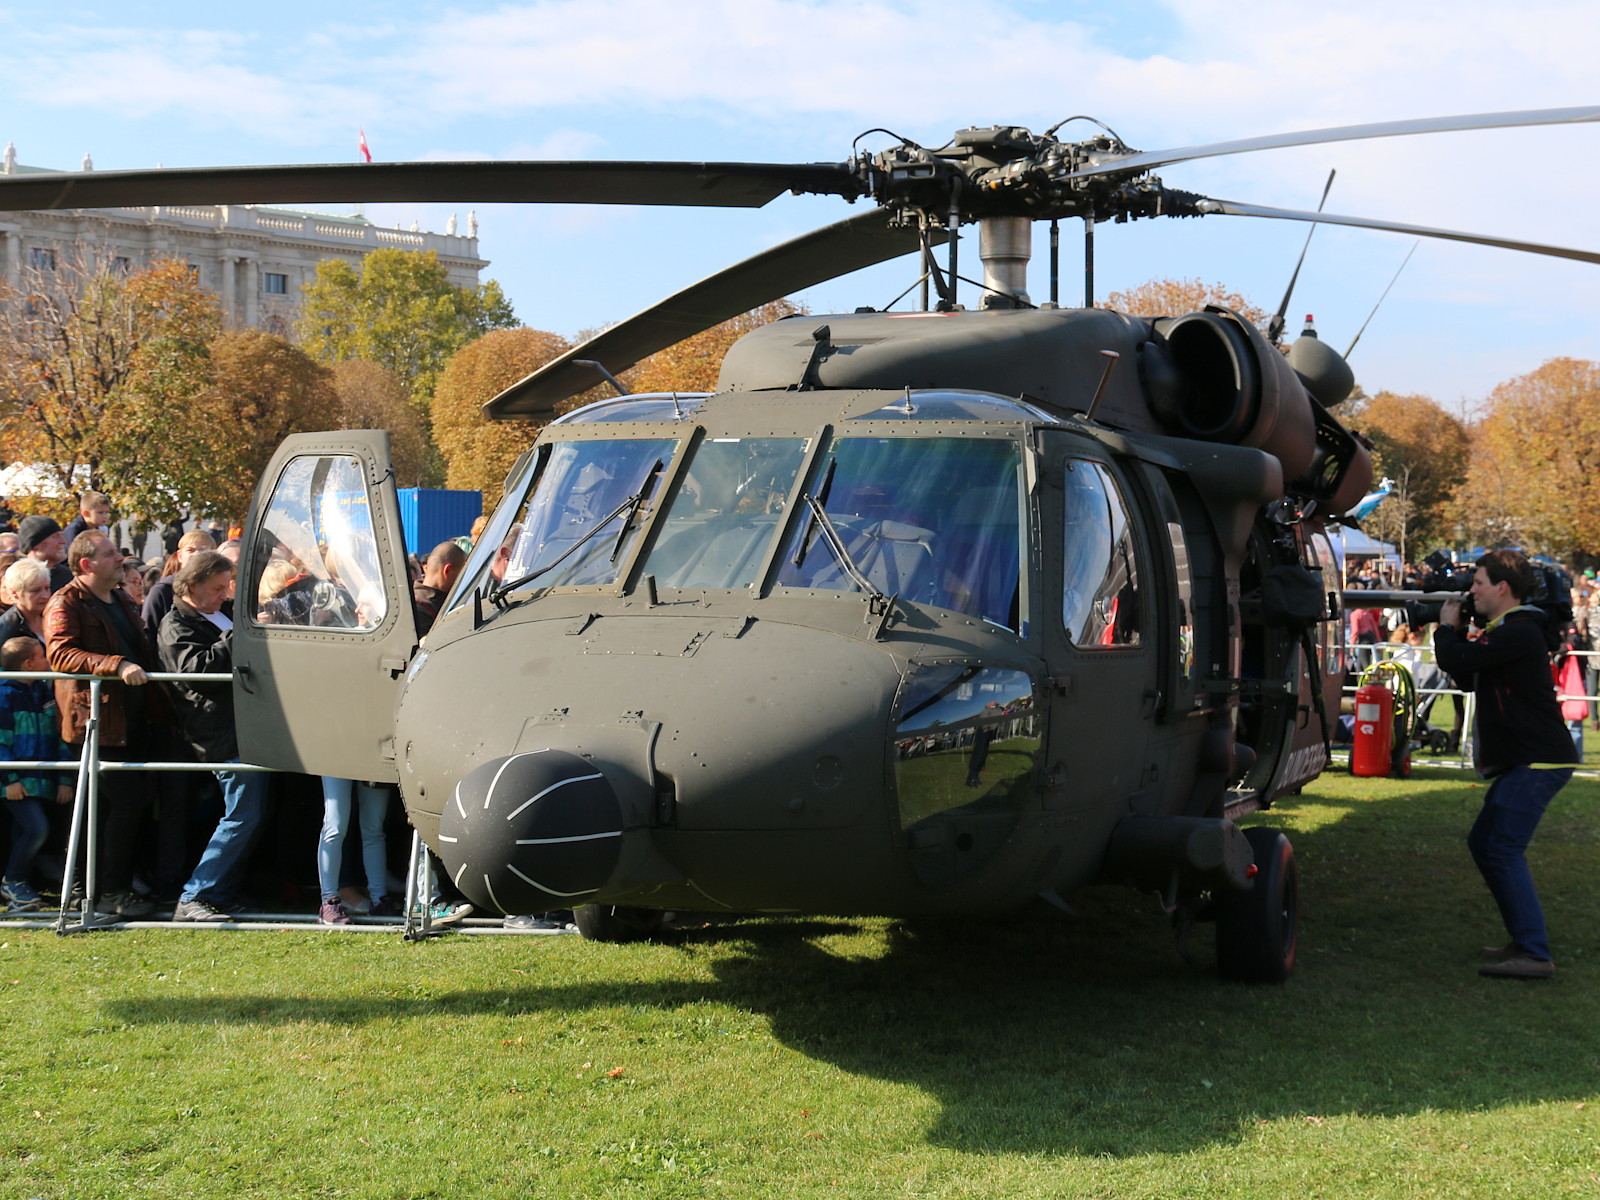 Sikorsky S-70A-42 Black Hawk © Doppeladler.com